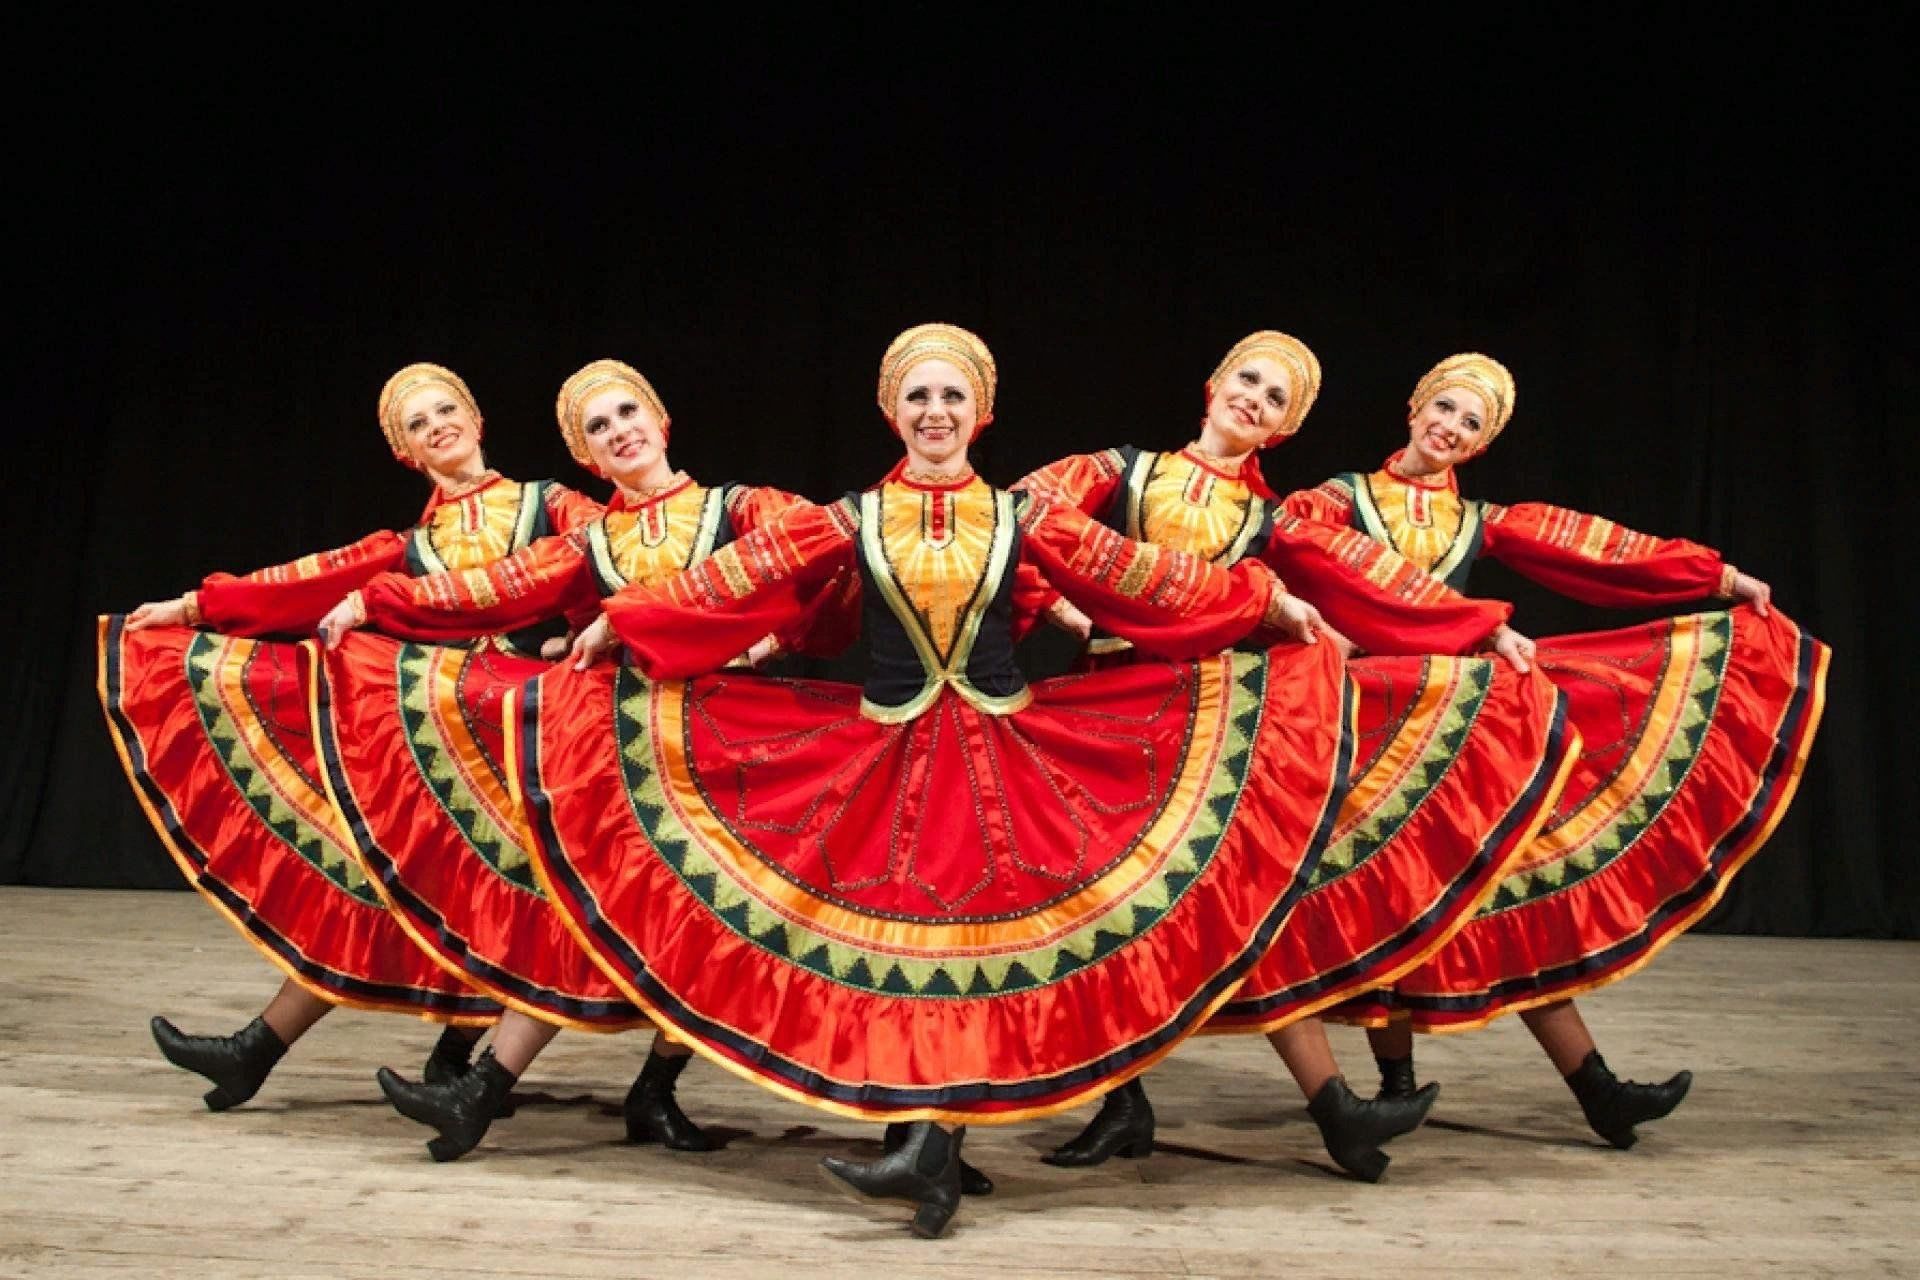 Русские народные танцы с резкой сменой фигур увлекают зрителей в вихре танцевальной эйфории